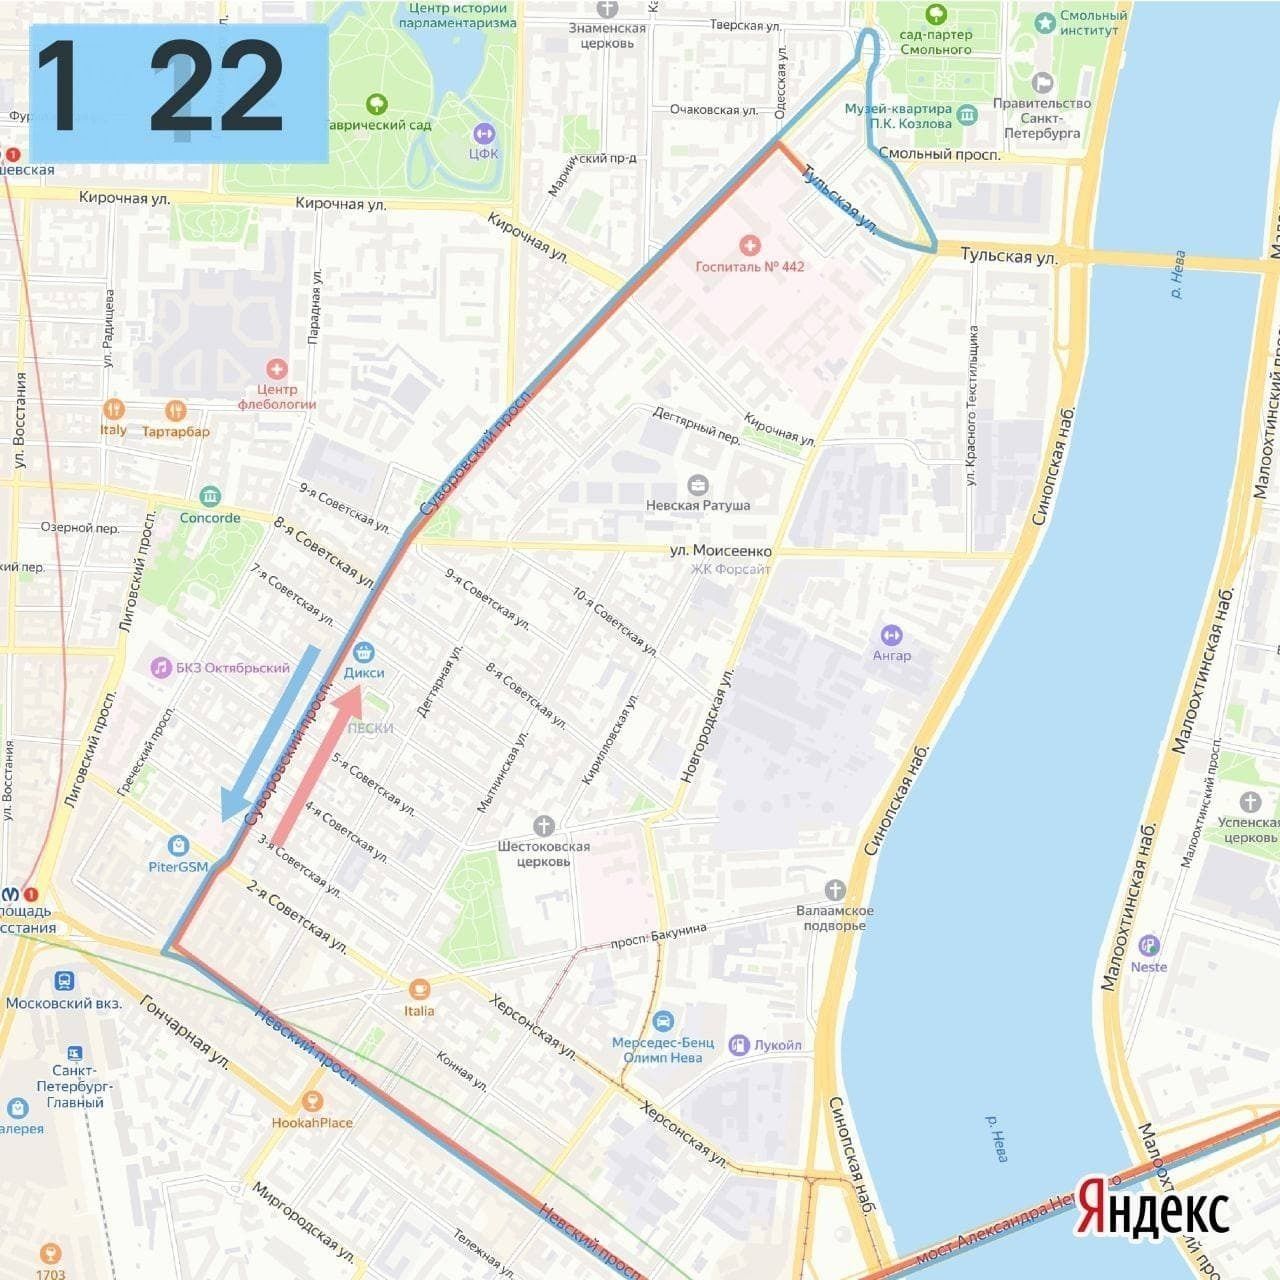 Движение троллейбусов спб. Троллейбус 4 СПБ маршрут. Маршрут 23 троллейбуса СПБ. Маршрут троллейбуса 23 Санкт-Петербург на карте. Маршрут троллейбуса 43 Санкт-Петербург на карте.